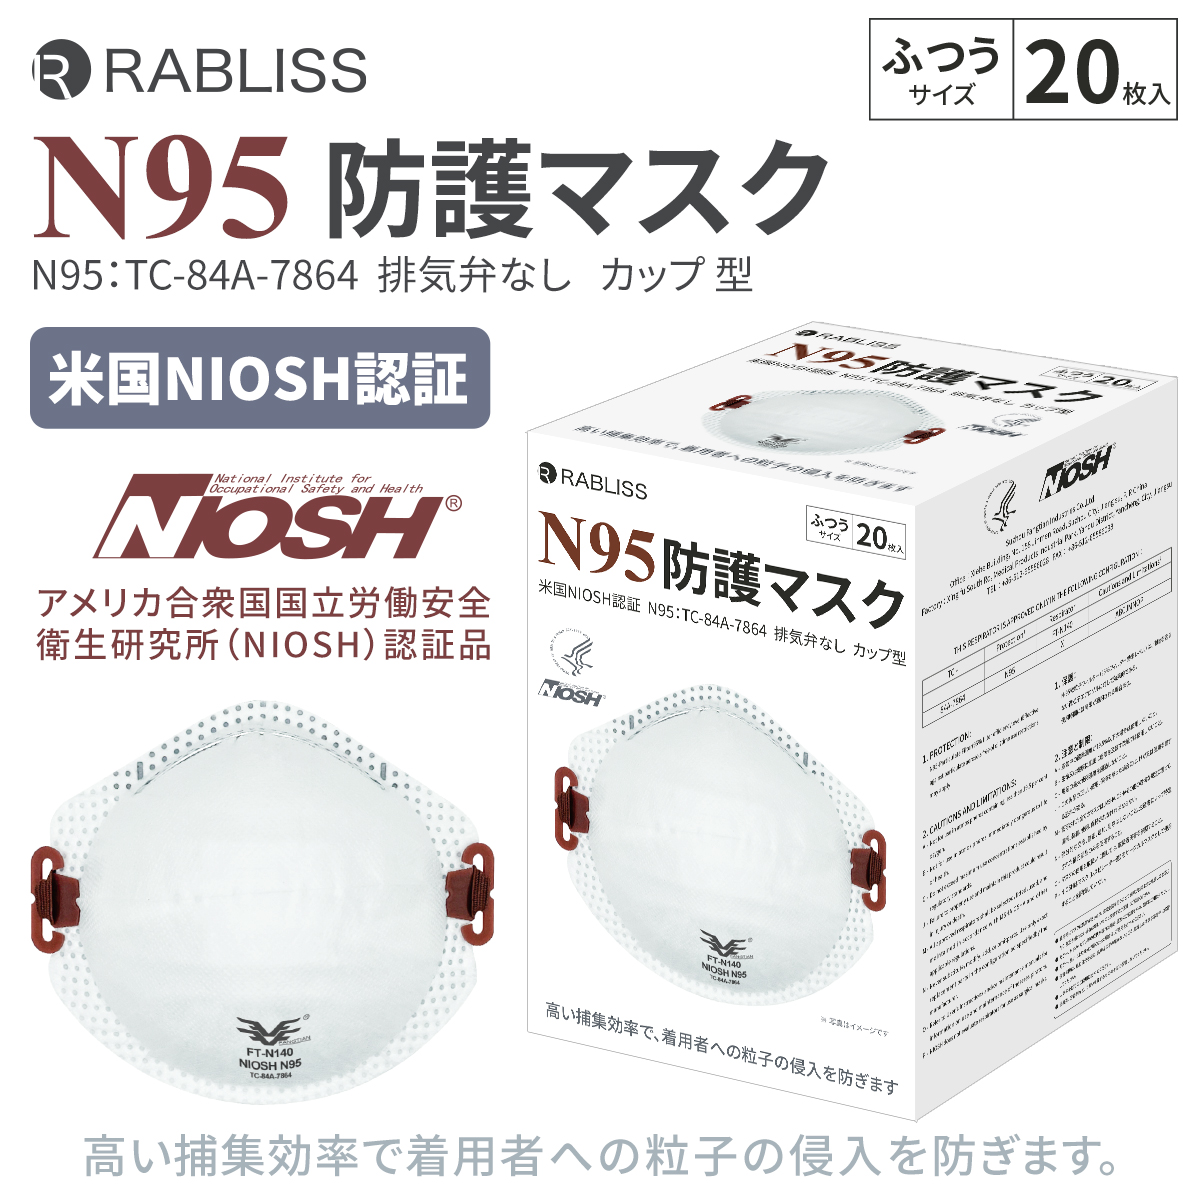  RABLISS N95 マスク カップ型 20枚入×3